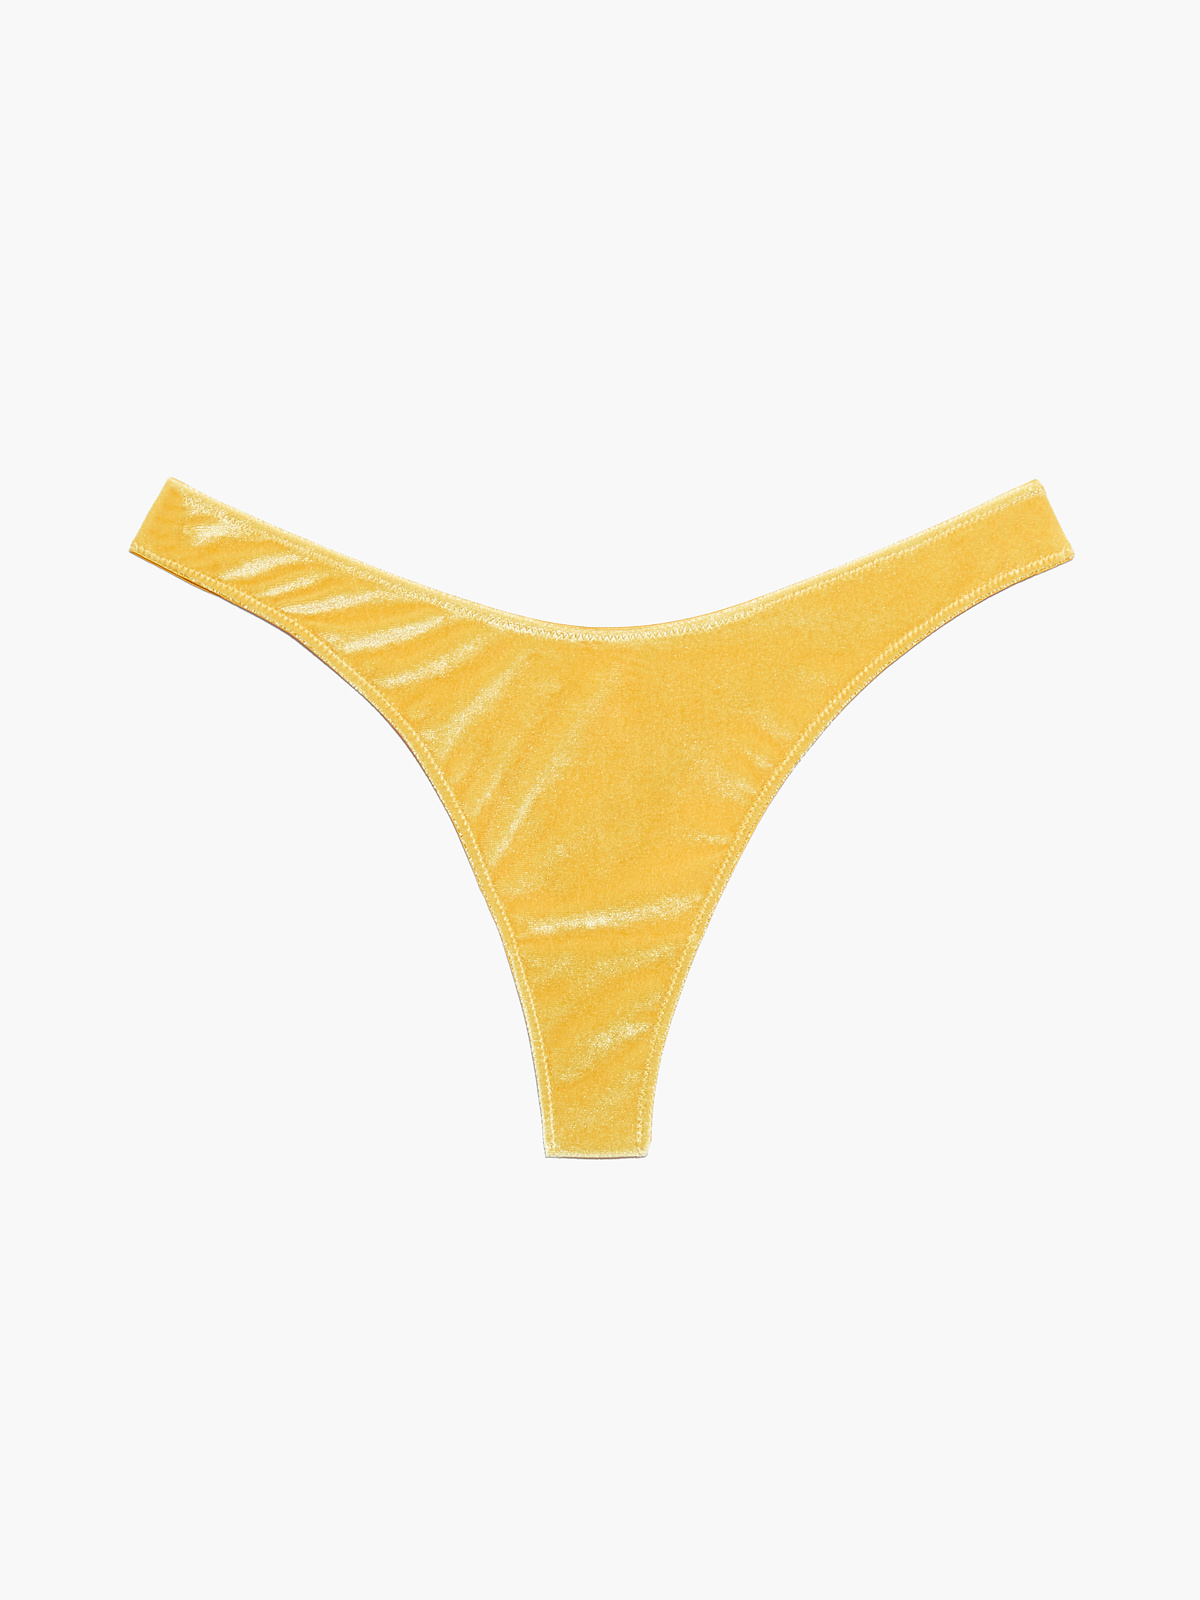 Yellow Satin Flutter Thong Panties -  Canada